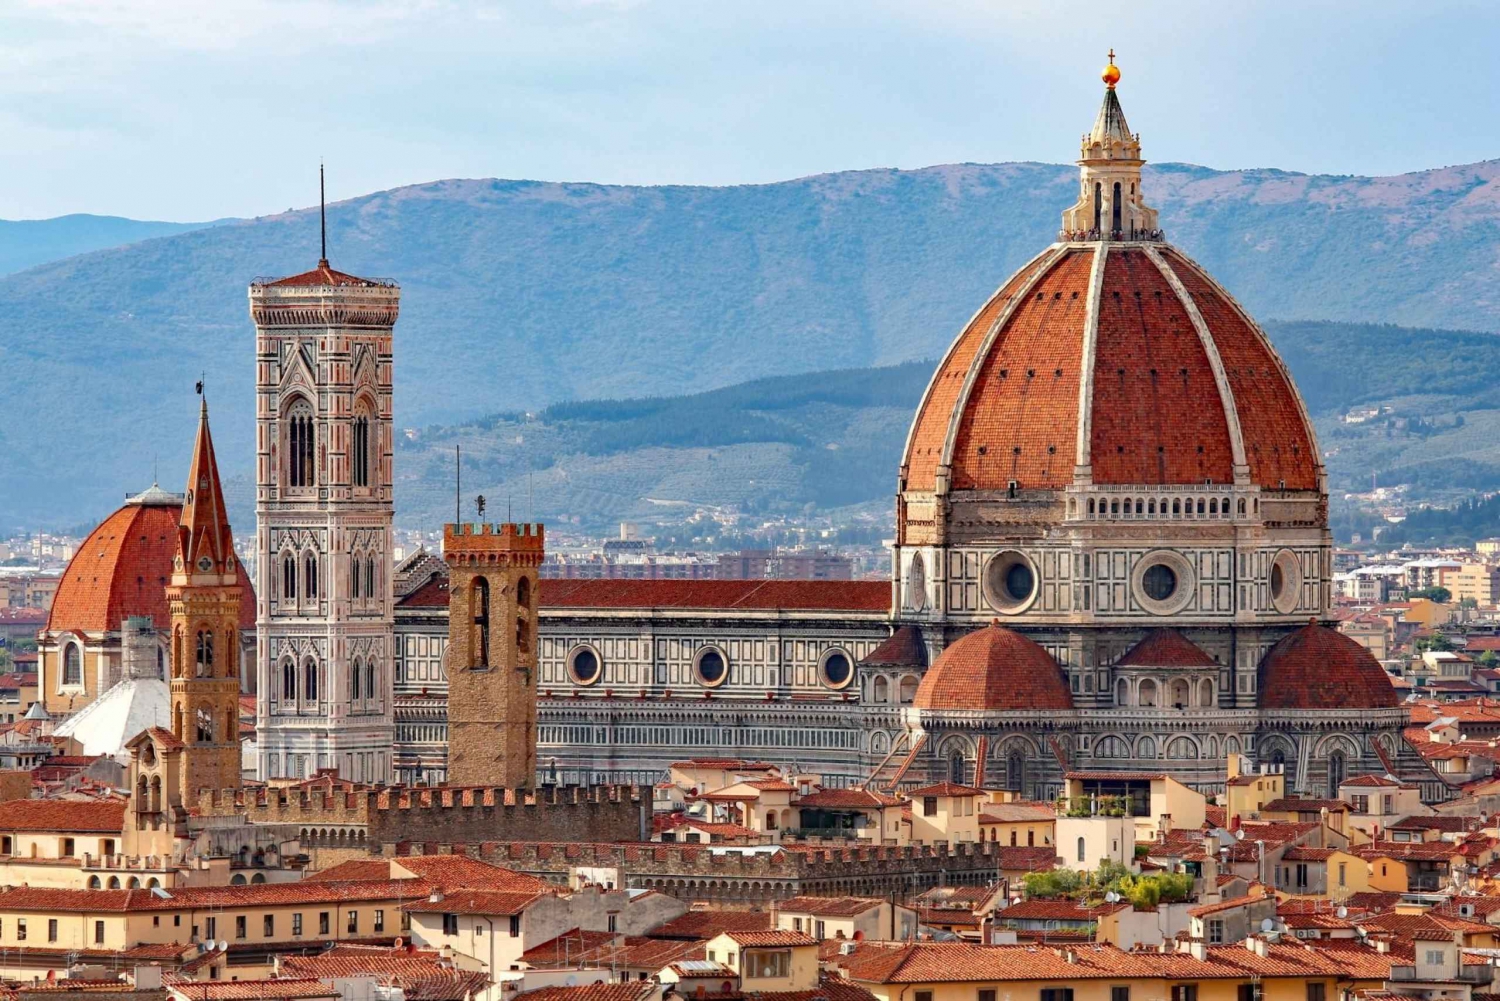 Florence Walking Tour, Duomo, Ponte Vecchio, Uffizi Gallery